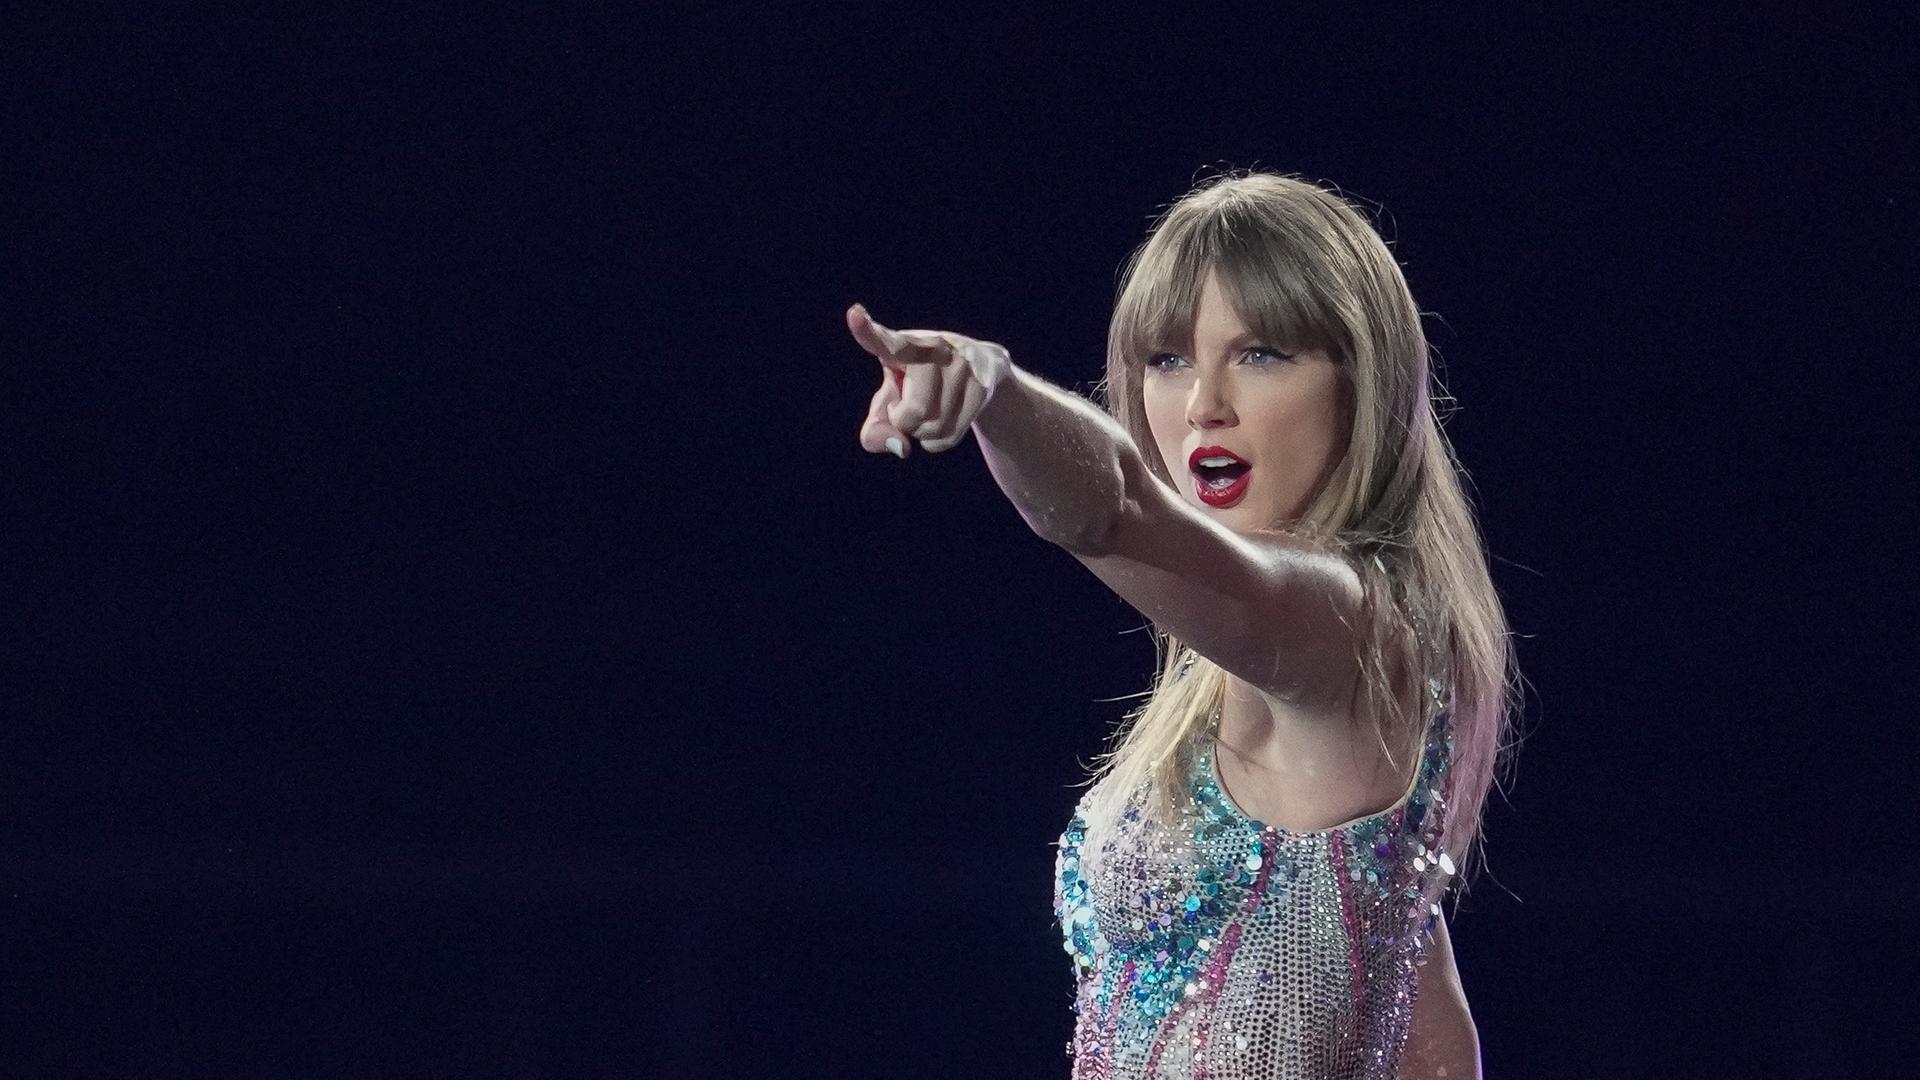 Die US-Sängerin Taylor Swift steht auf einer dunklen Bühne, trägt einen Glitzerbody und zeigt mit dem Finger ins Publikum.